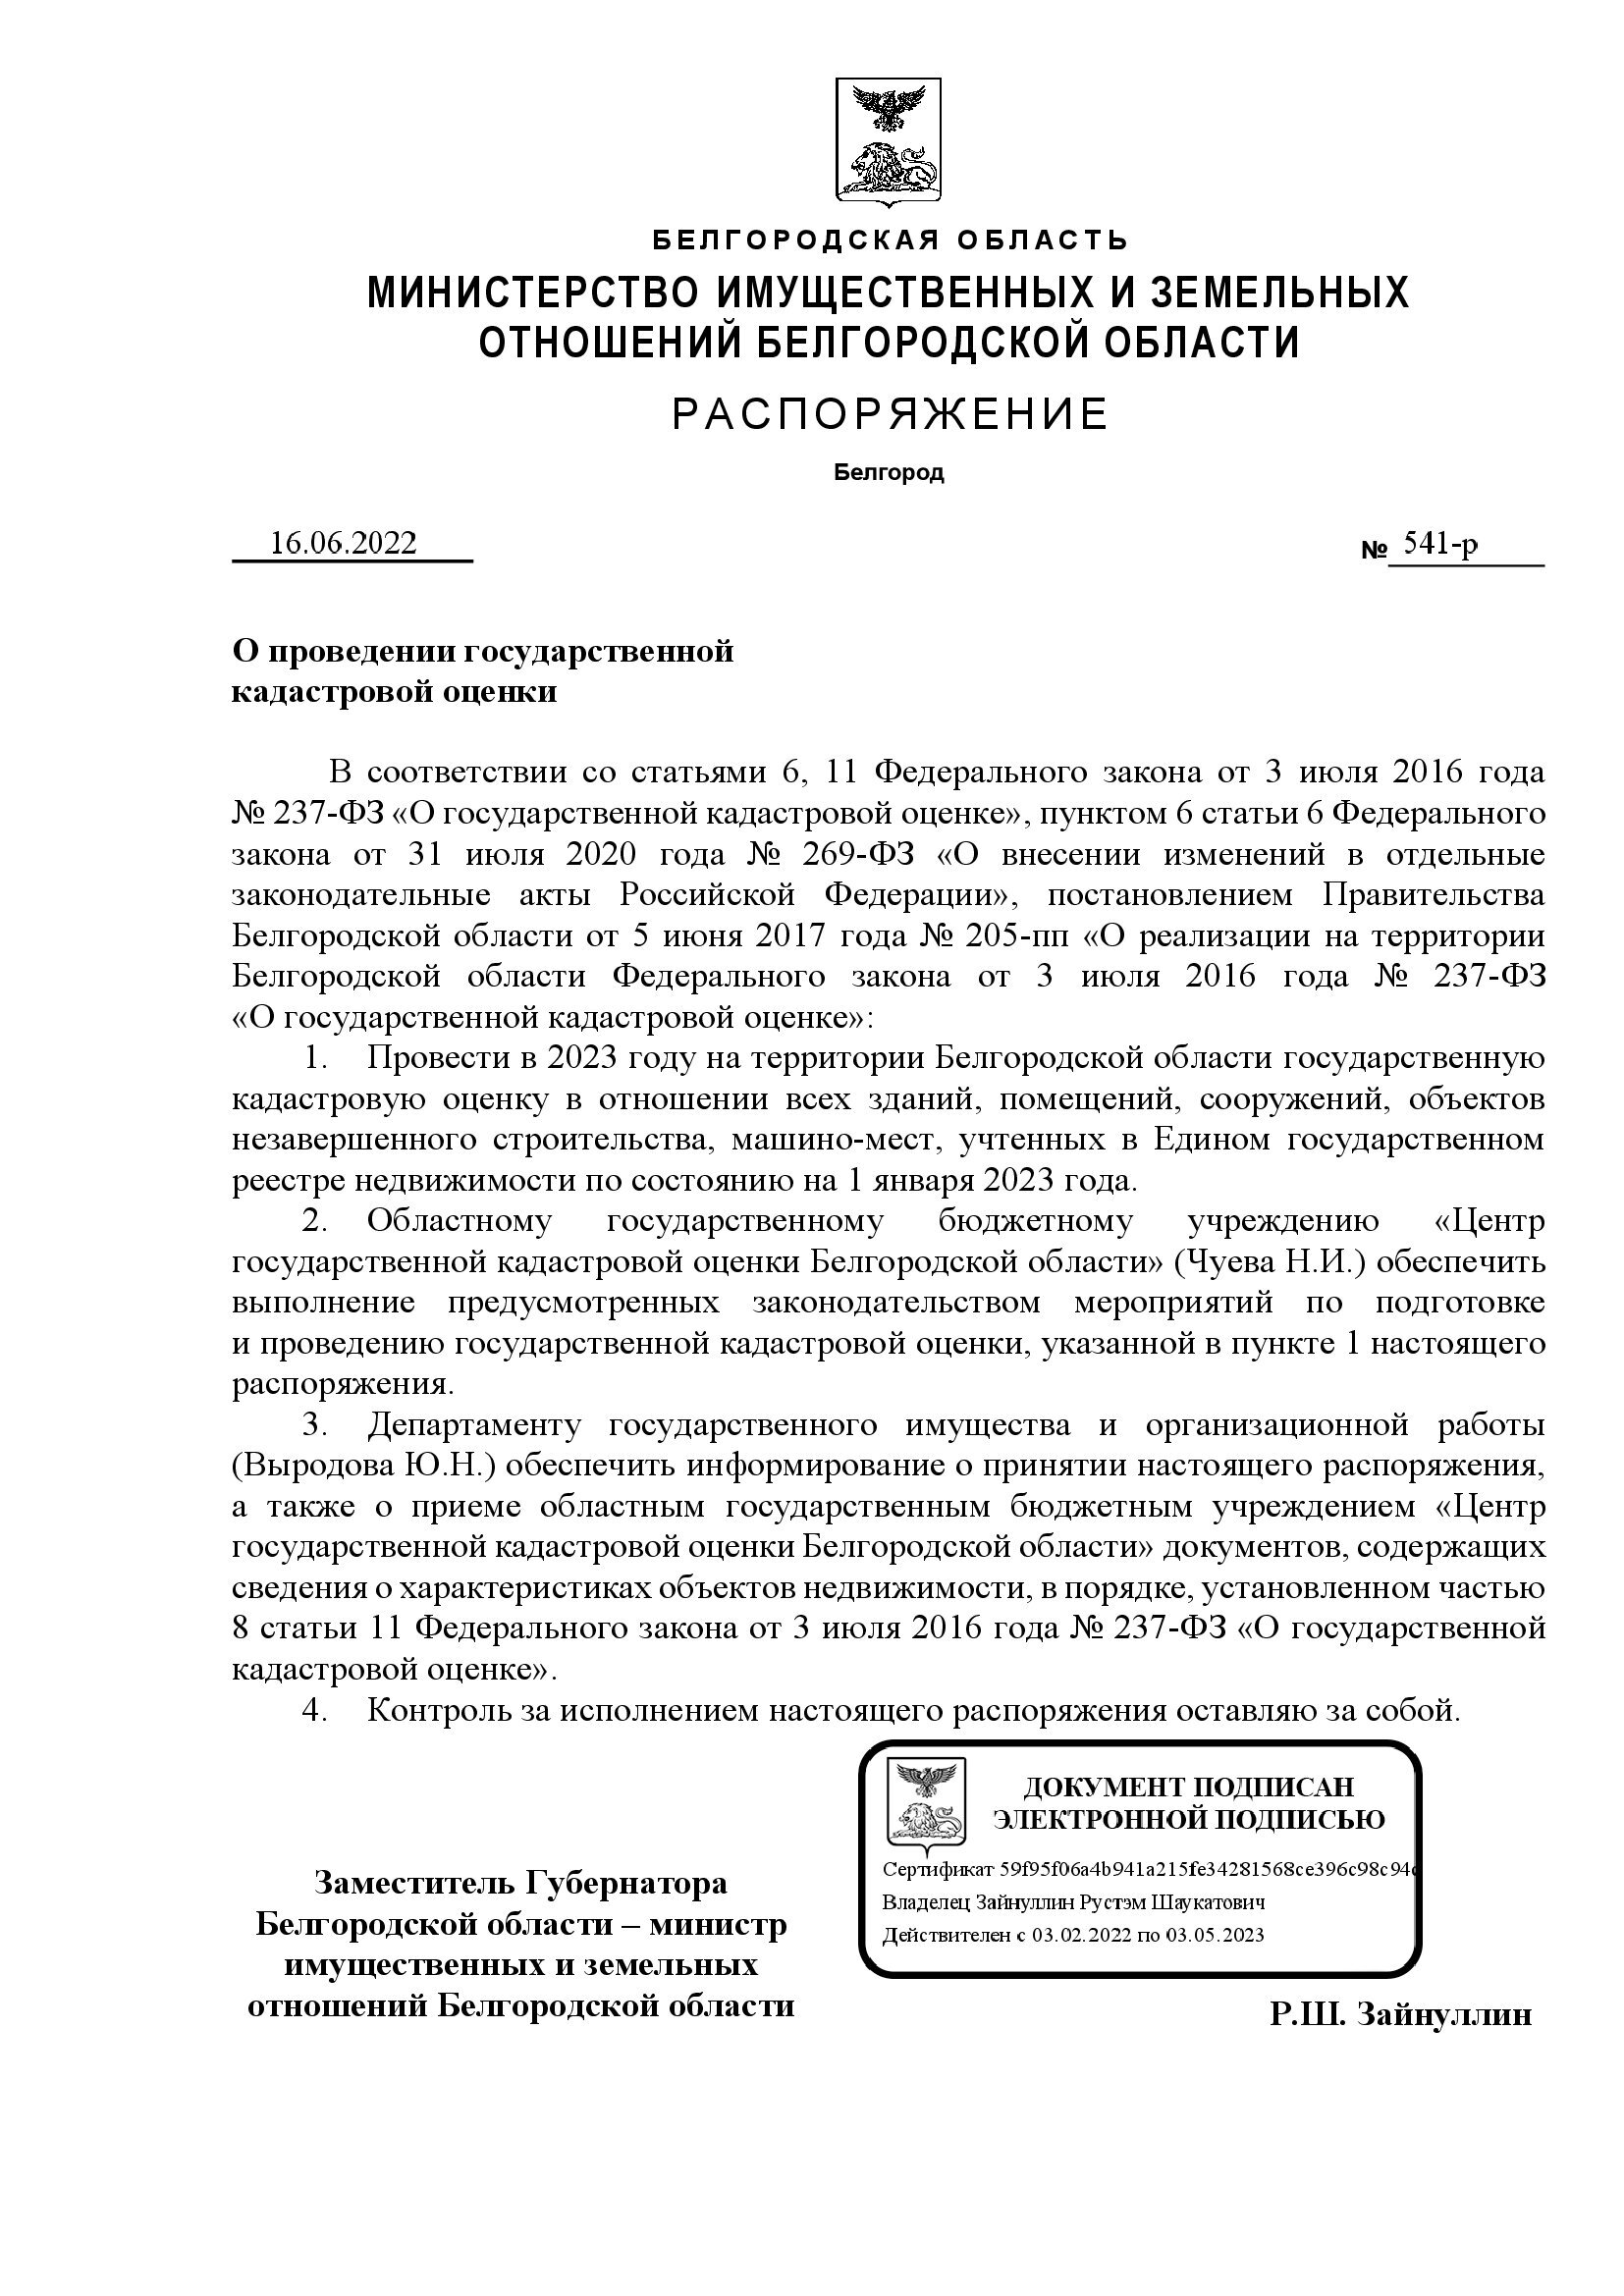 Распоряжение Министерства имущественных и земельных отношений Белгородской области от 16.06.2022 года № 541-р &quot;О проведении государственной кадастровой оценки&quot;.